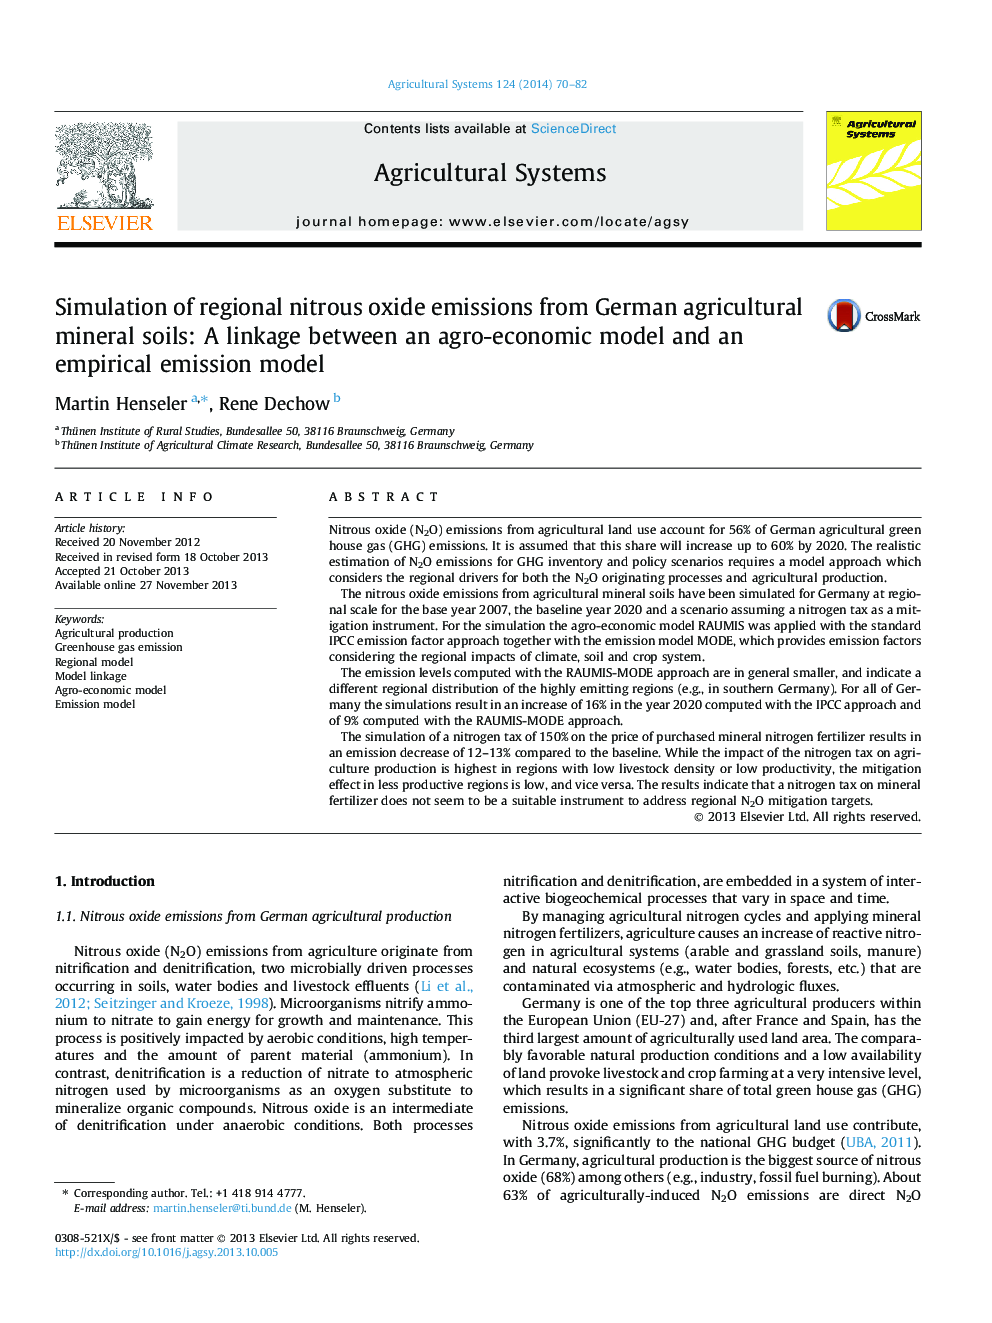 شبیه سازی انتشار اکسید نیتروژن منطقه ای از خاک های معدنی کشاورزی آلمان: پیوند بین یک مدل کشاورزی-اقتصادی و یک مدل انتشار تجربی 